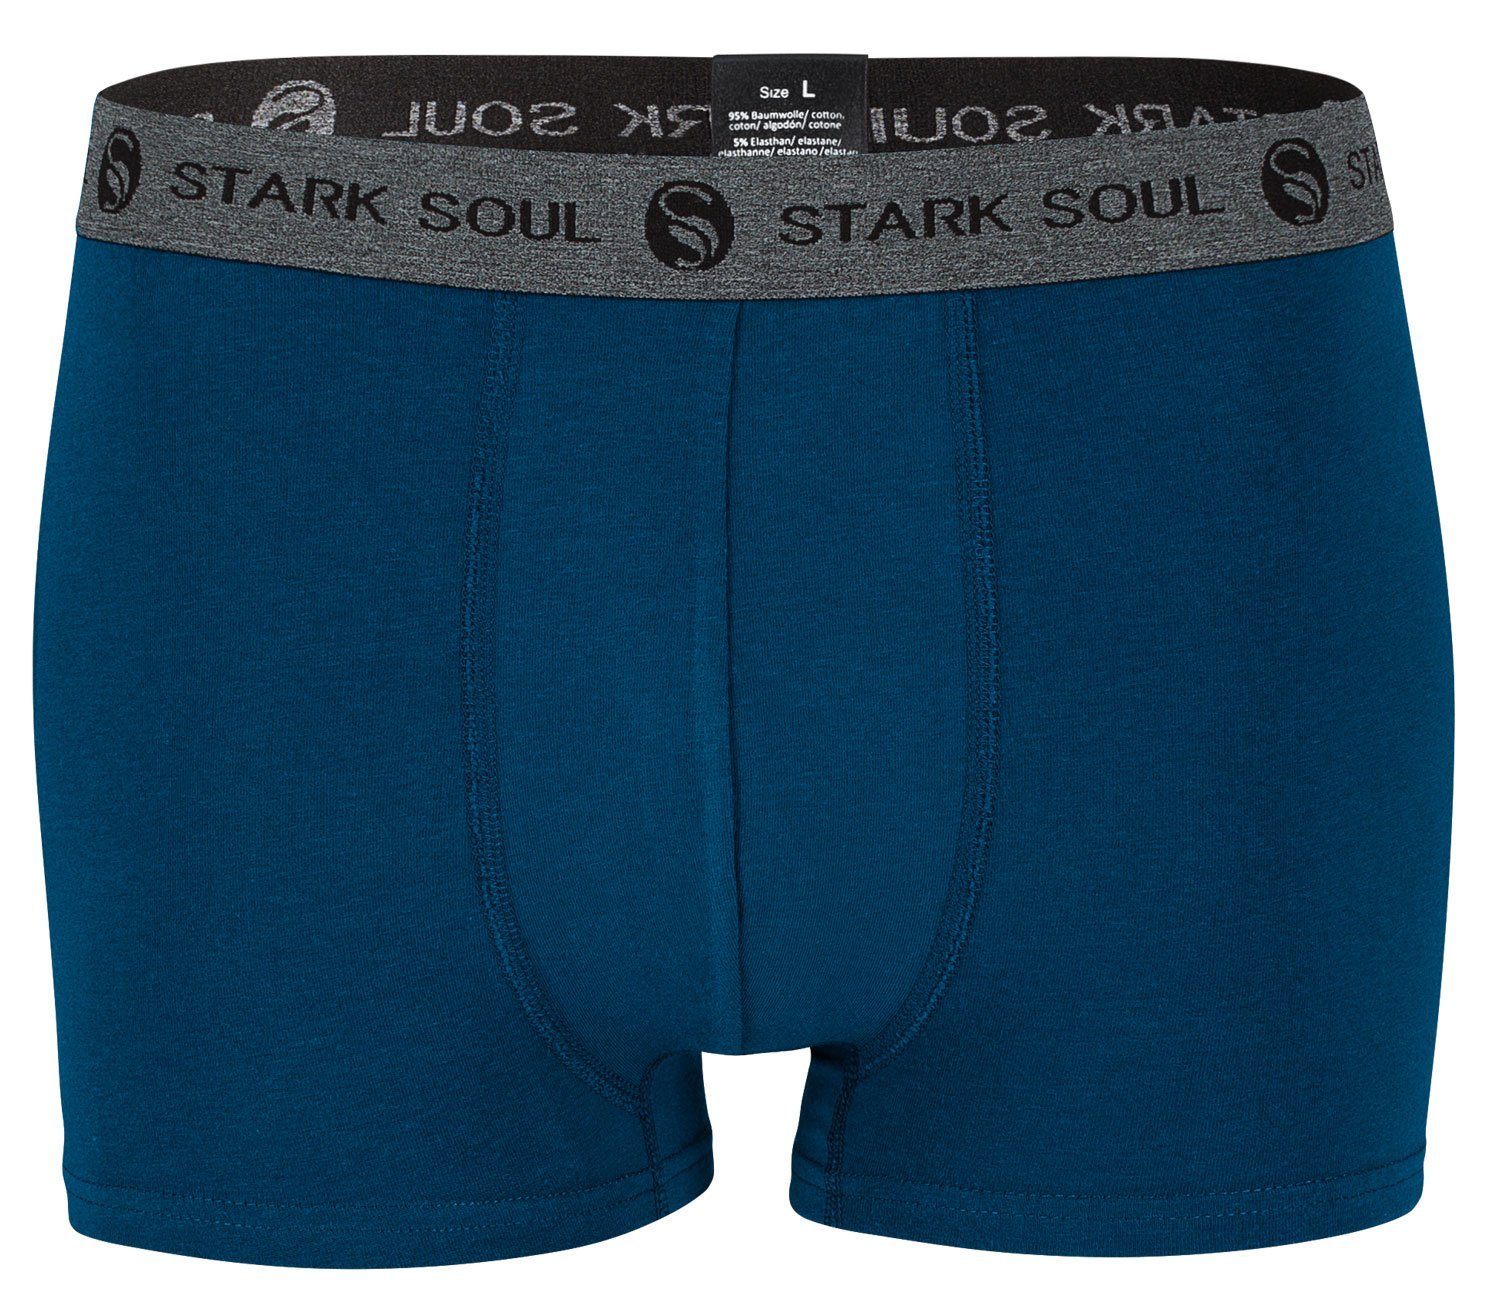 Stark Soul® Boxershorts Pack, 6er Baumwoll-Unterhosen Hipster Herren 6er-Pack Gemischt-V1 im Boxershorts